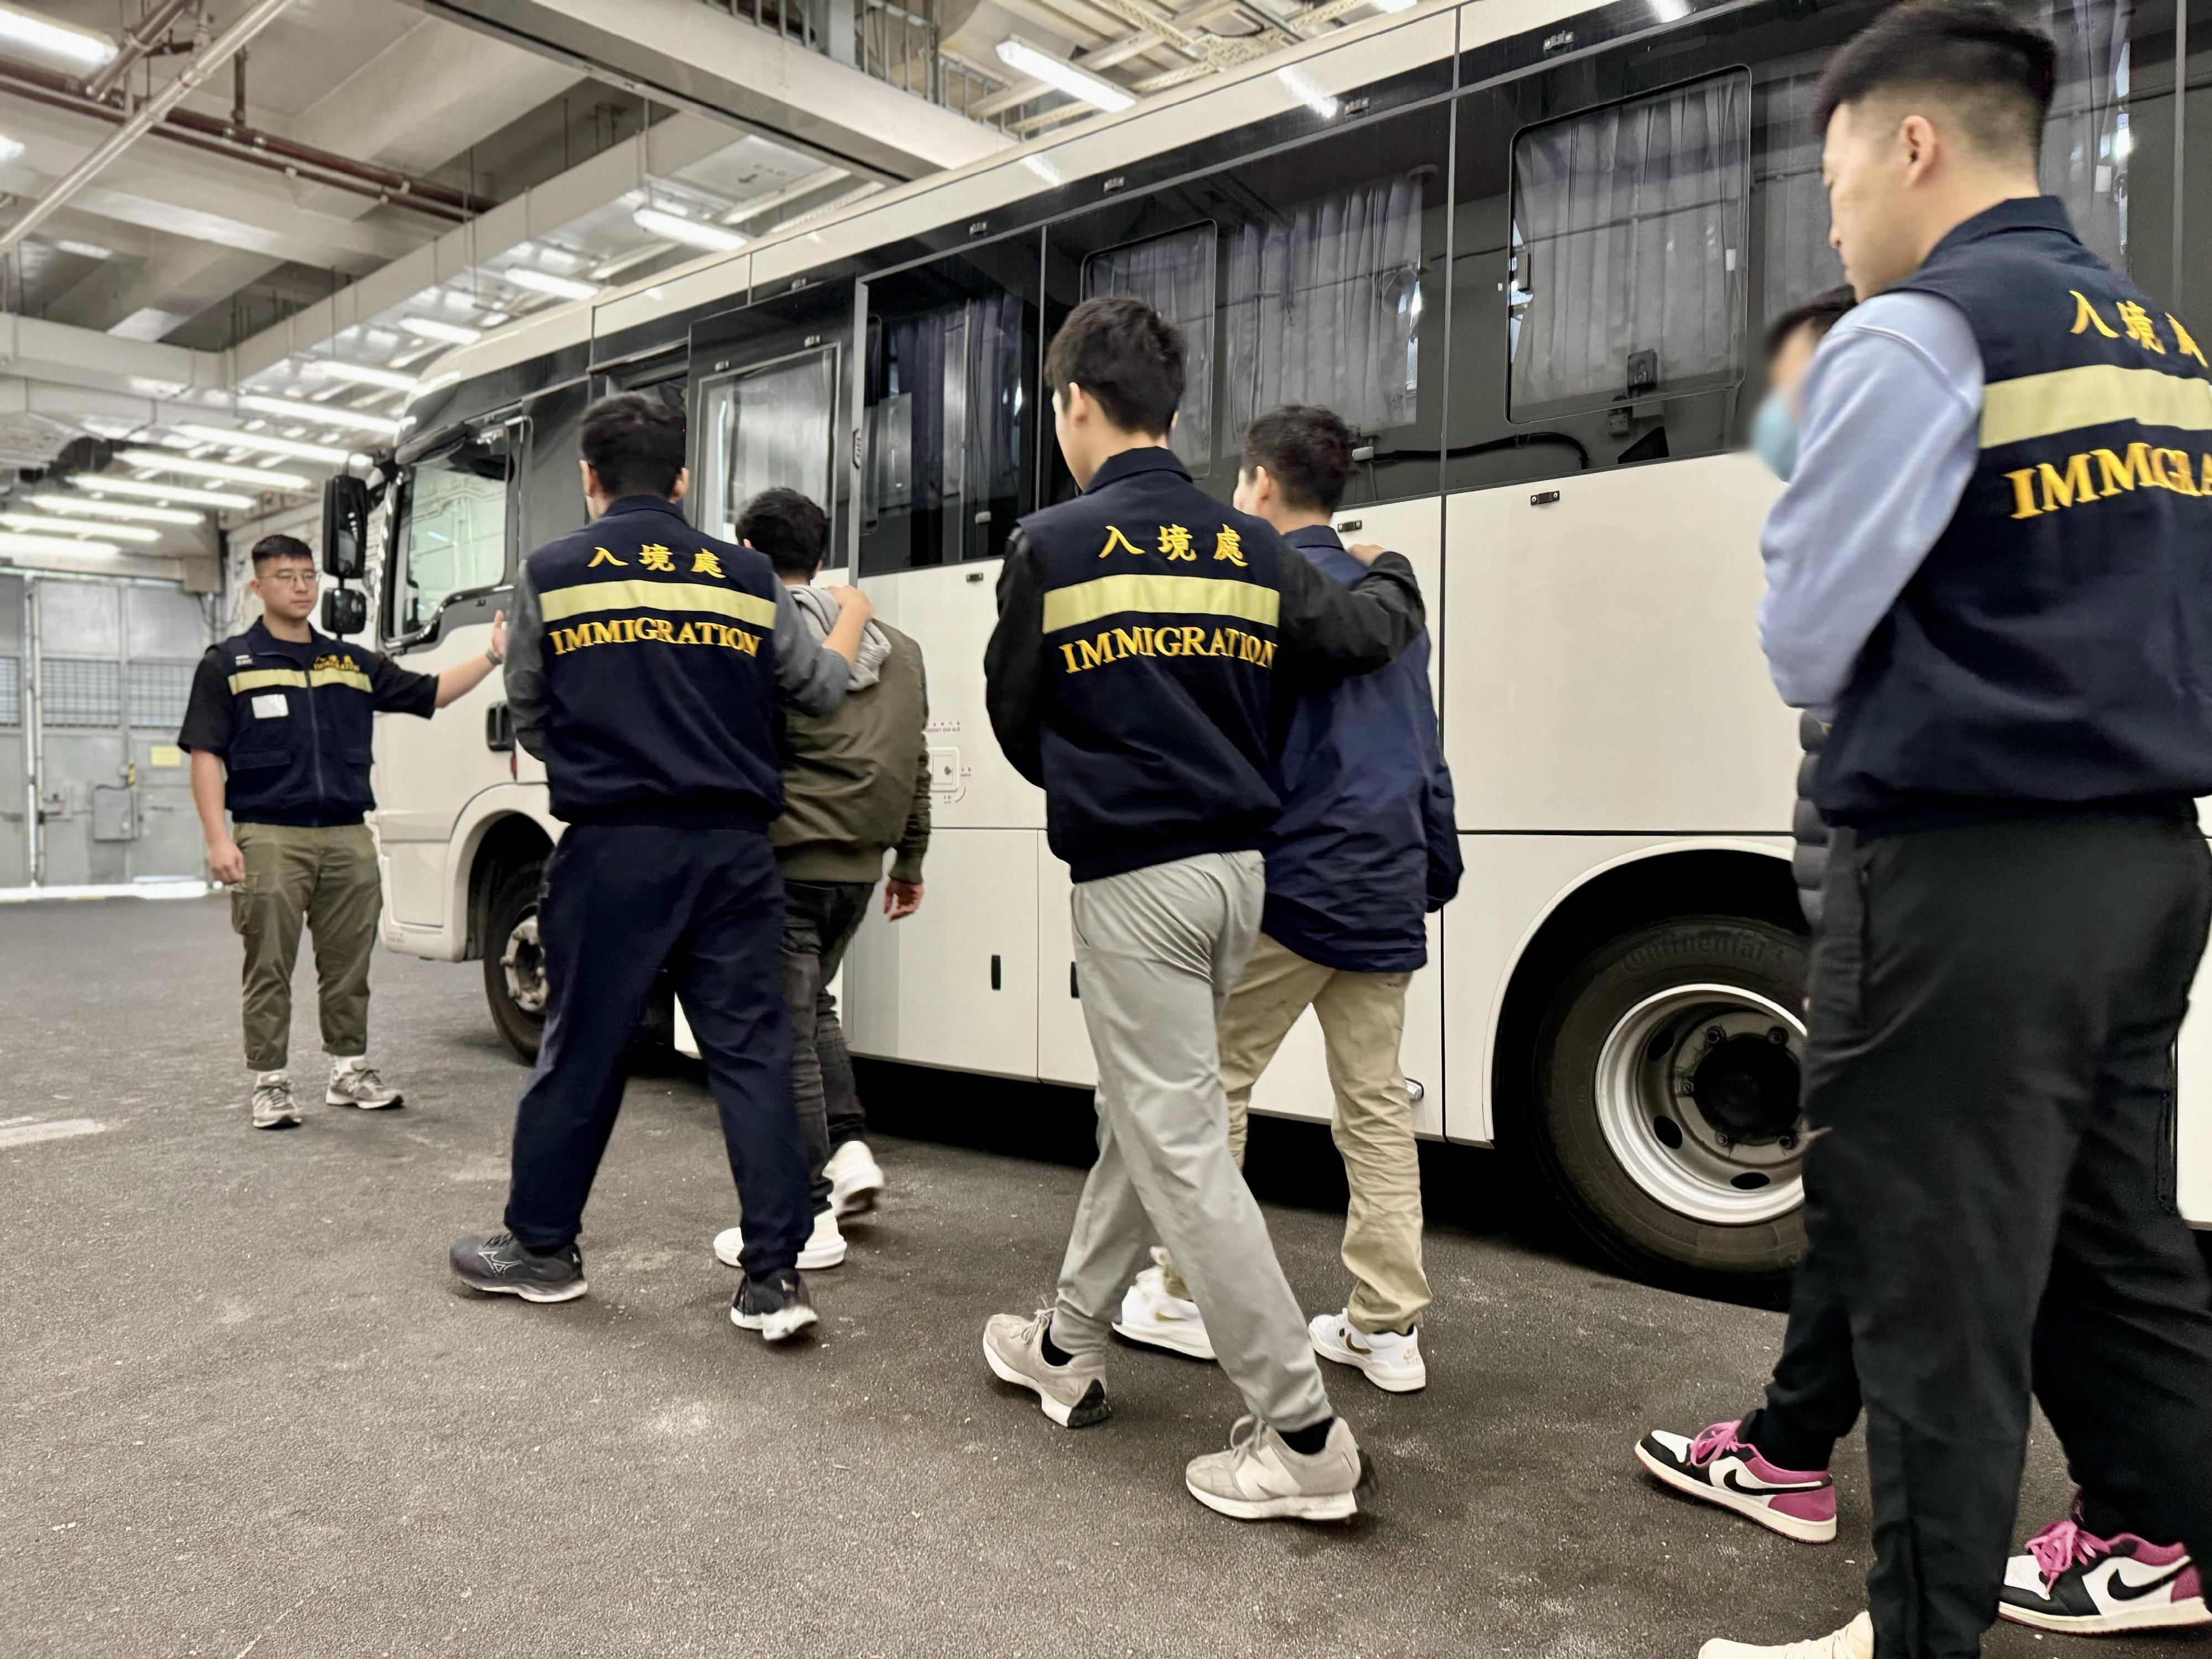 入境事务处（入境处）今日（二月二十七日）执行遣送行动，将23名越南籍非法入境者遣返越南。图示被遣返人士在入境处人员押送下离开羁押地点前往机场。